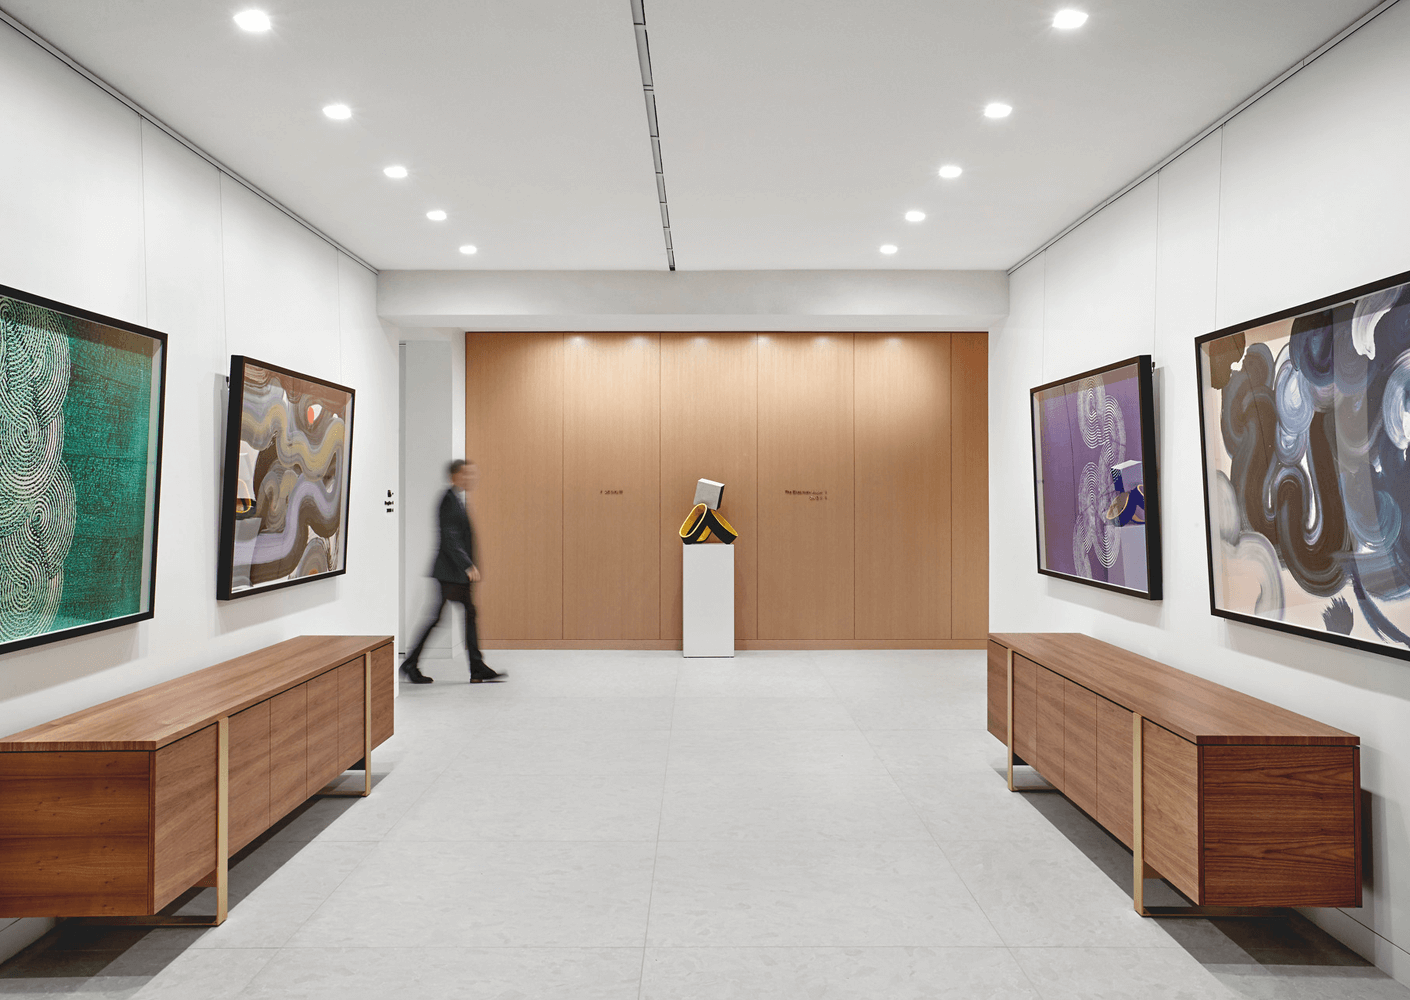 Gallery corridor